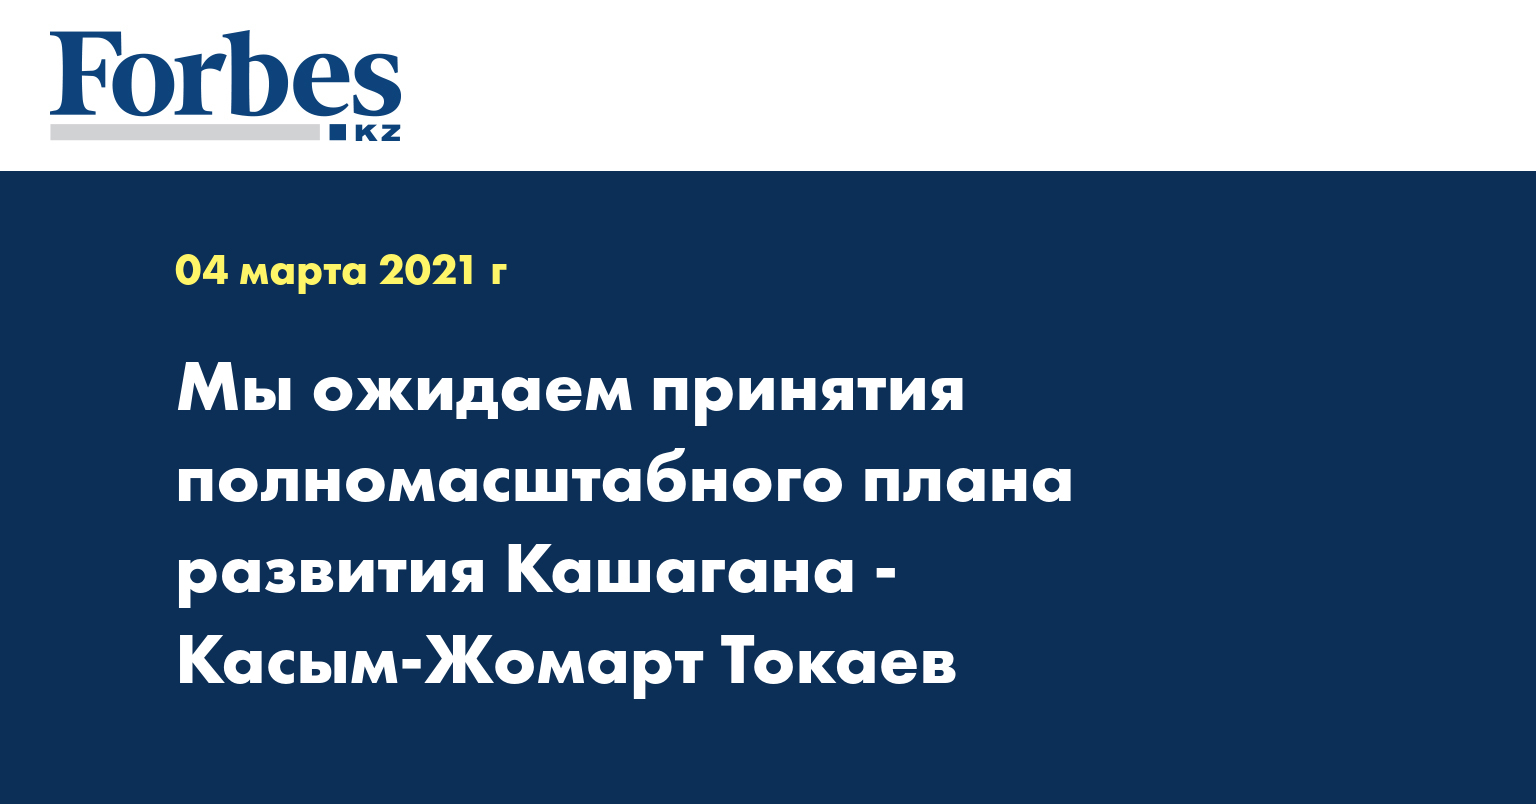 Мы ожидаем принятия полномасштабного плана развития Кашагана - Касым-Жомарт Токаев